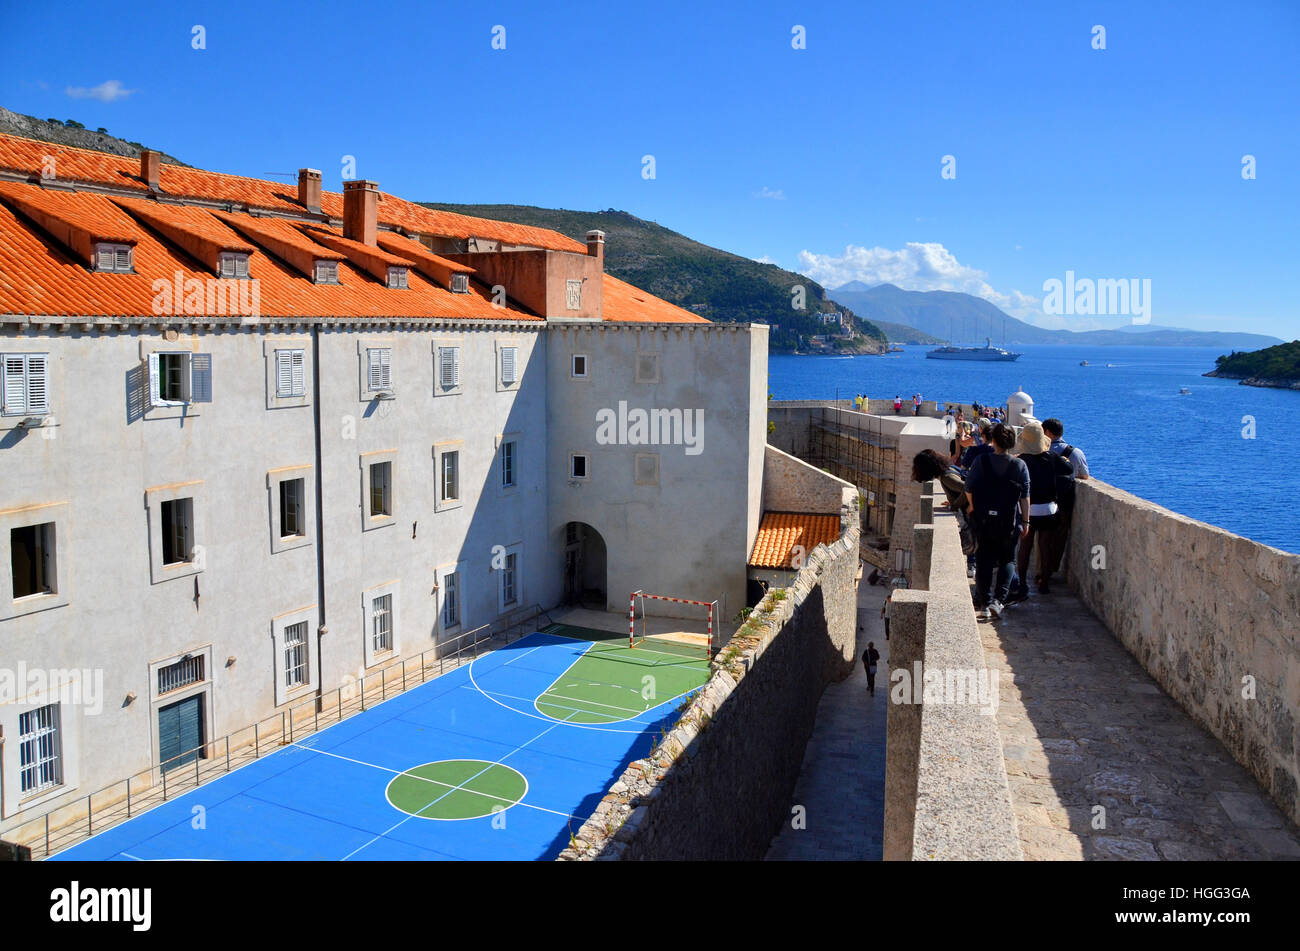 Touristen Fuß entlang der Wand der ummauerten Stadt von Dubrovnik, Kroatien, vorbei ein Korbball Gericht Zugehörigkeit zu einer lokalen Schule. Stockfoto